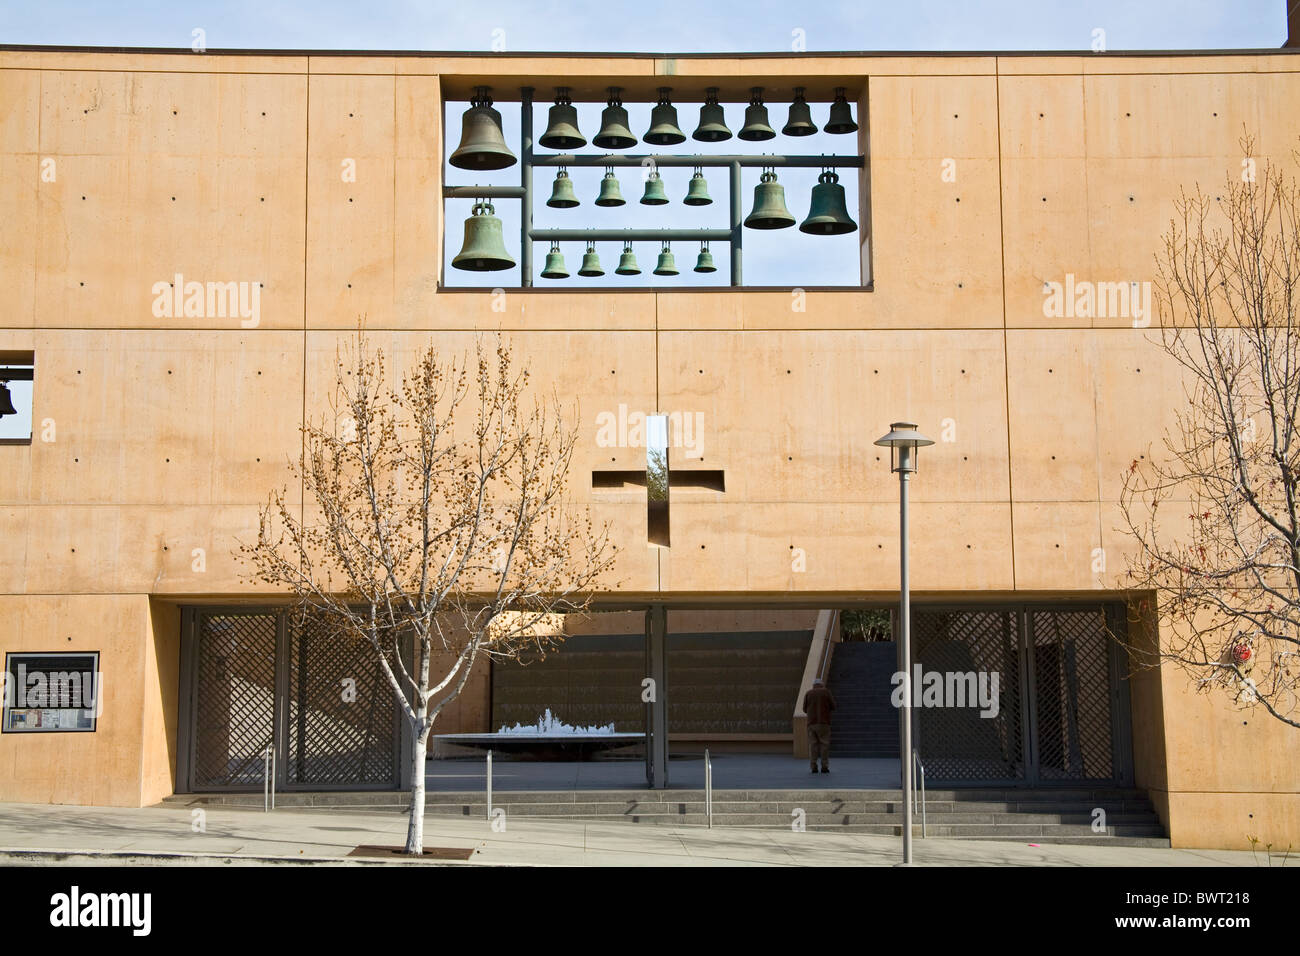 Cattedrale di Nostra Signora degli Angeli dall'architetto Rafael Moneo, il centro cittadino di Los Angeles, California, Stati Uniti d'America Foto Stock